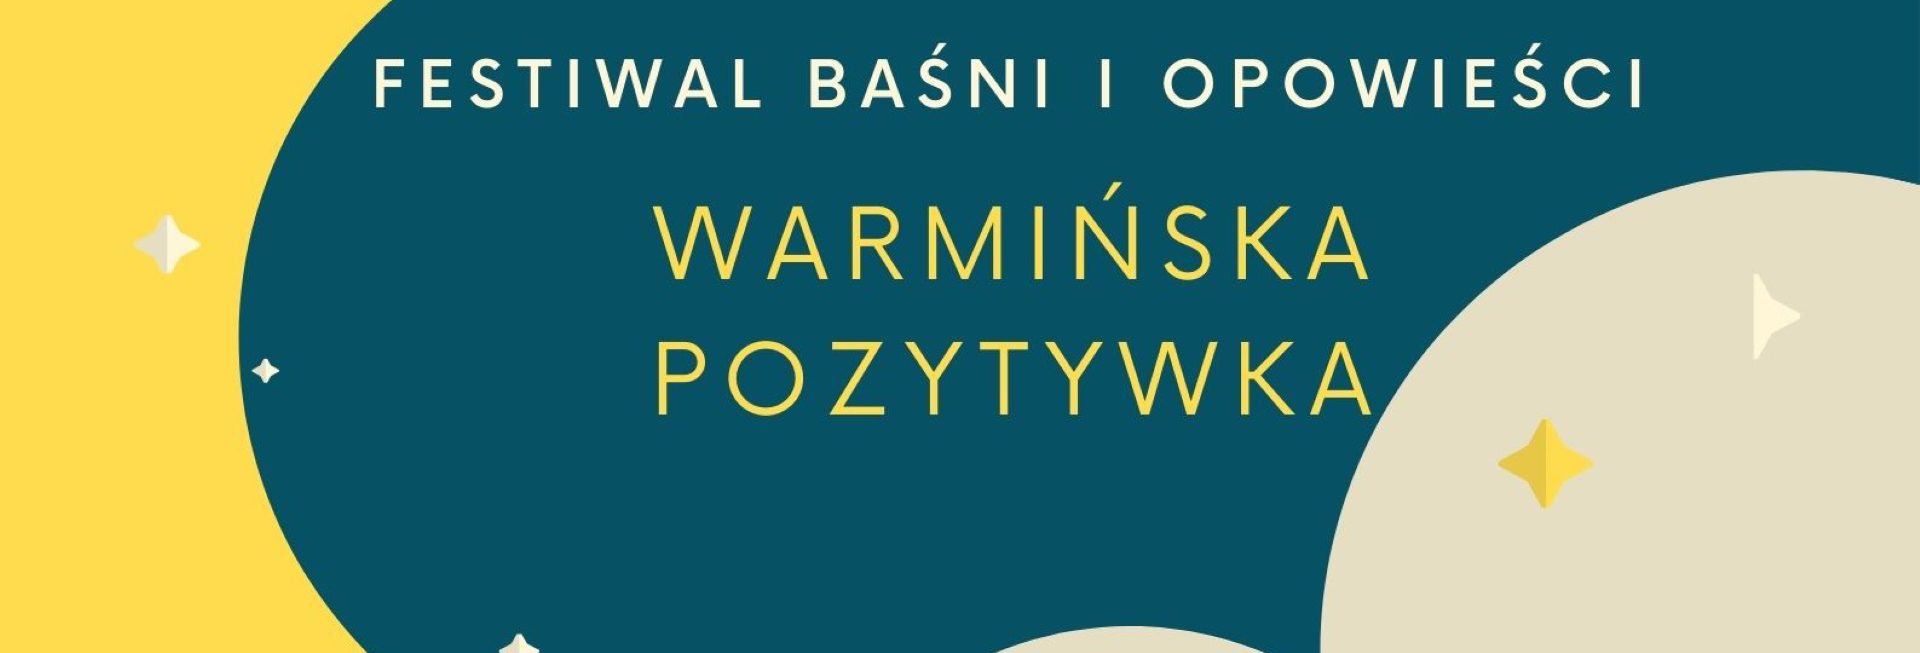 Plakat zapraszający do miejscowości Nowe Kawkowo w gminie Jonkowo powiecie olsztyńskim na Festiwal Baśni i Opowieści "Warmińska Pozytywka" Nowe Kawkowo 2022.